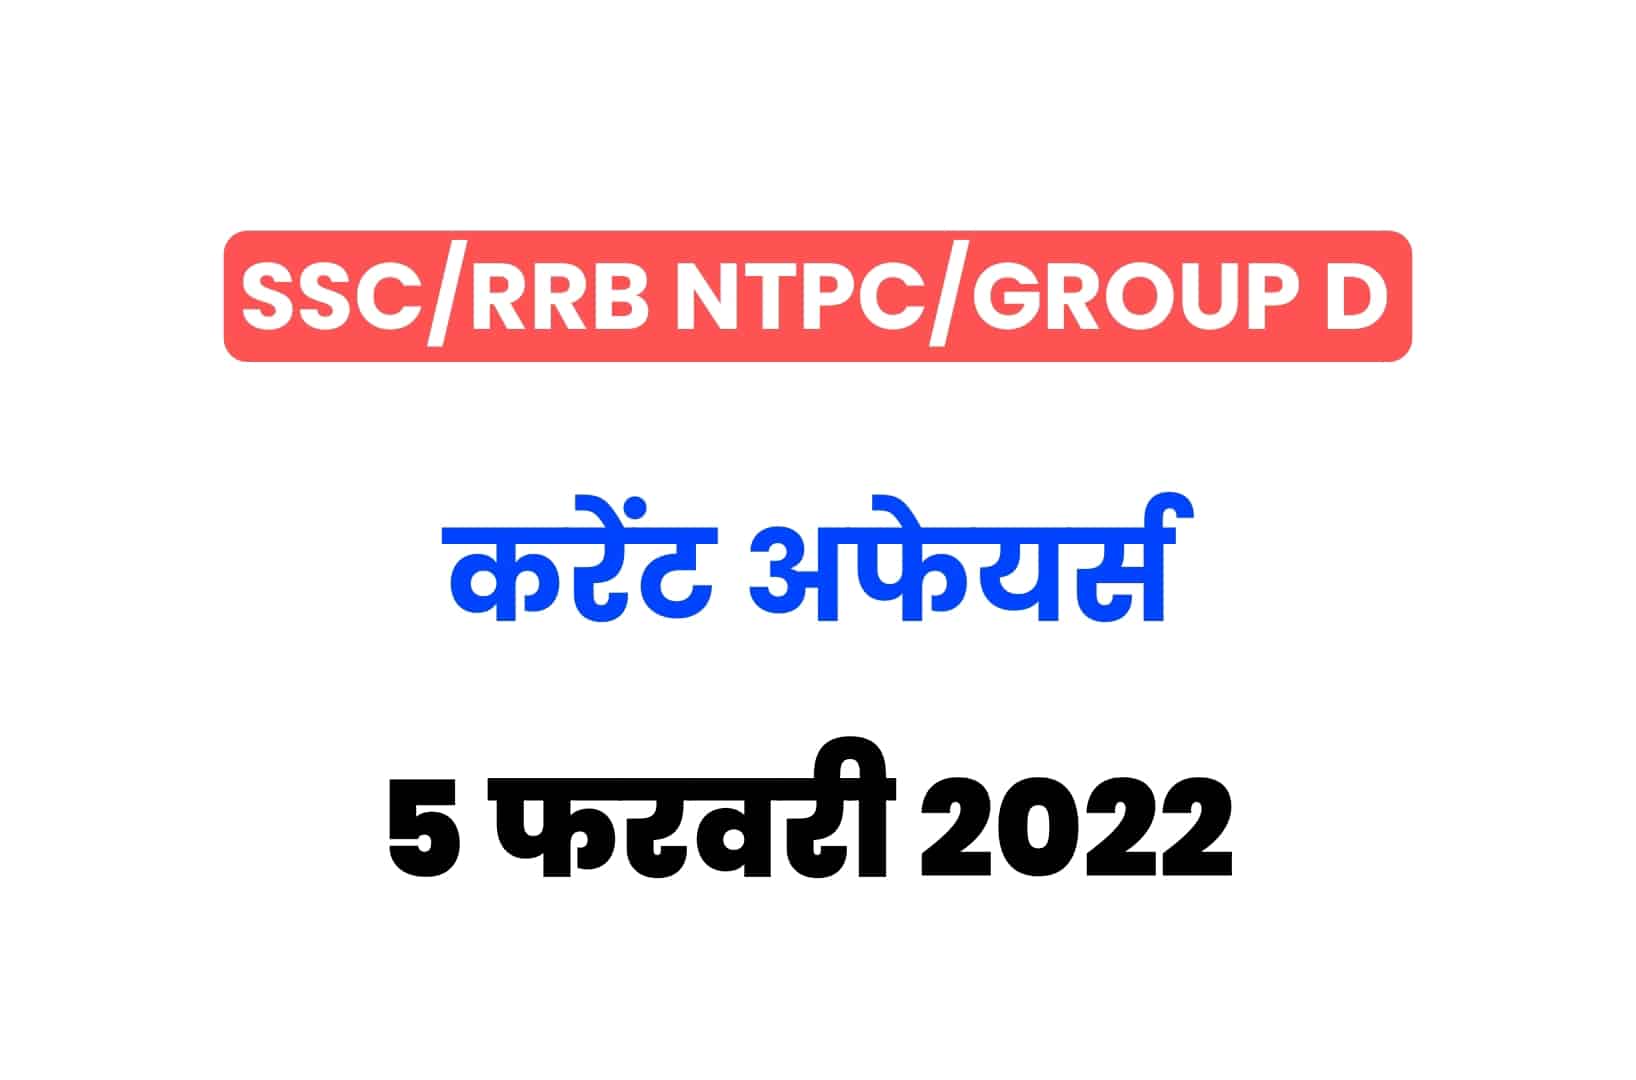 SSC/RRB Group D/NTPC Exam 2022: 5 फरवरी के 15 महत्वपूर्ण करेंट अफेयर्स के प्रश्न, जरूर पढ़ें